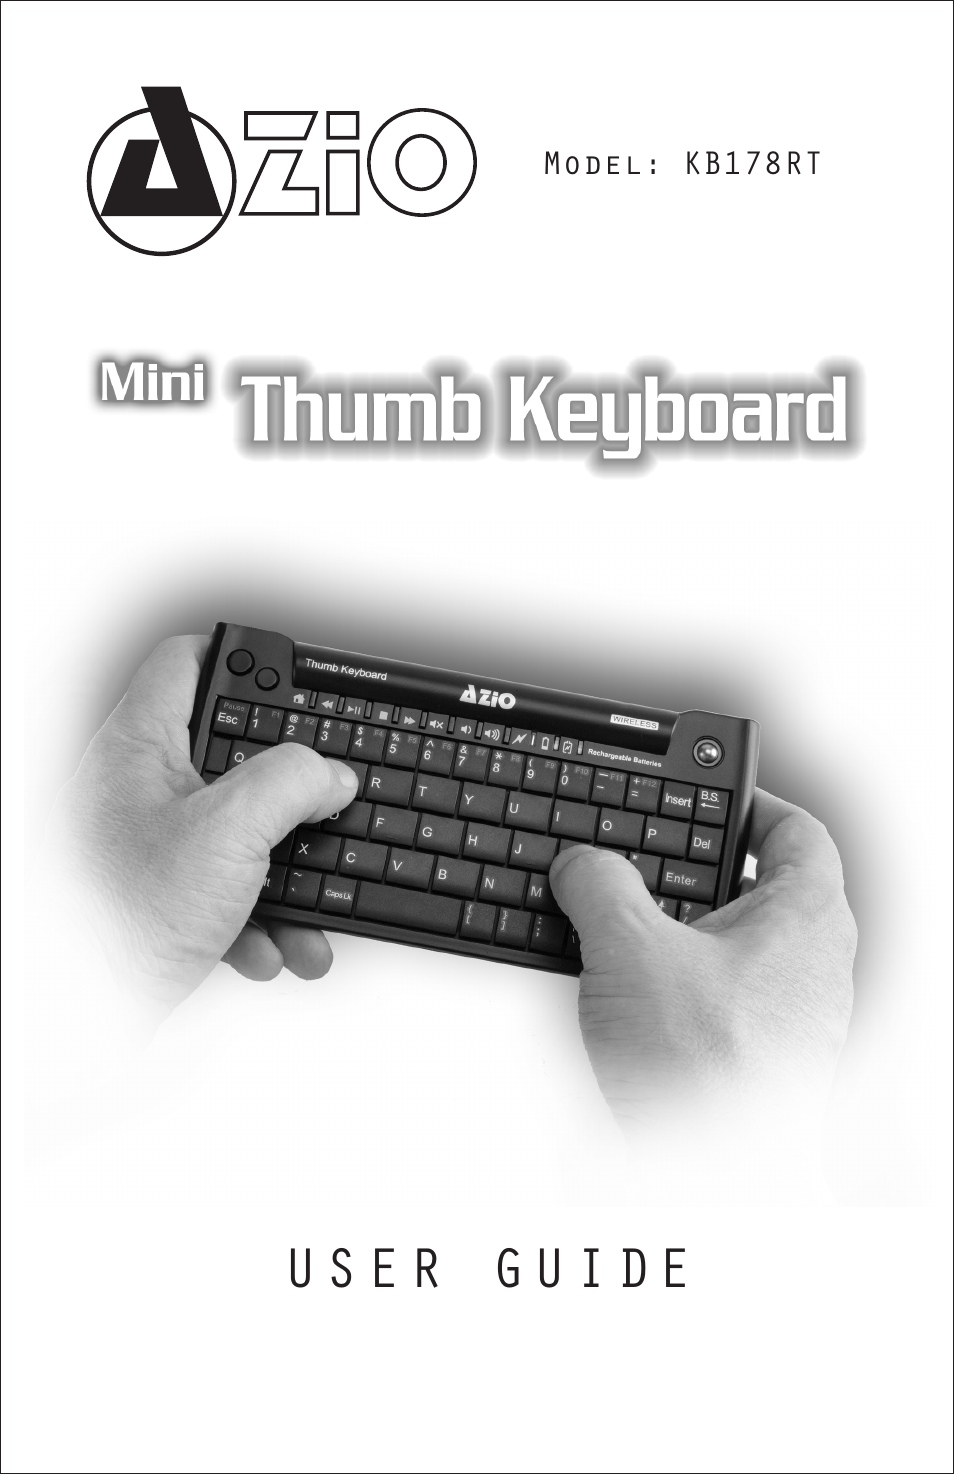 Mini Thumb Keyboard w/ Trackball (KB178RT)